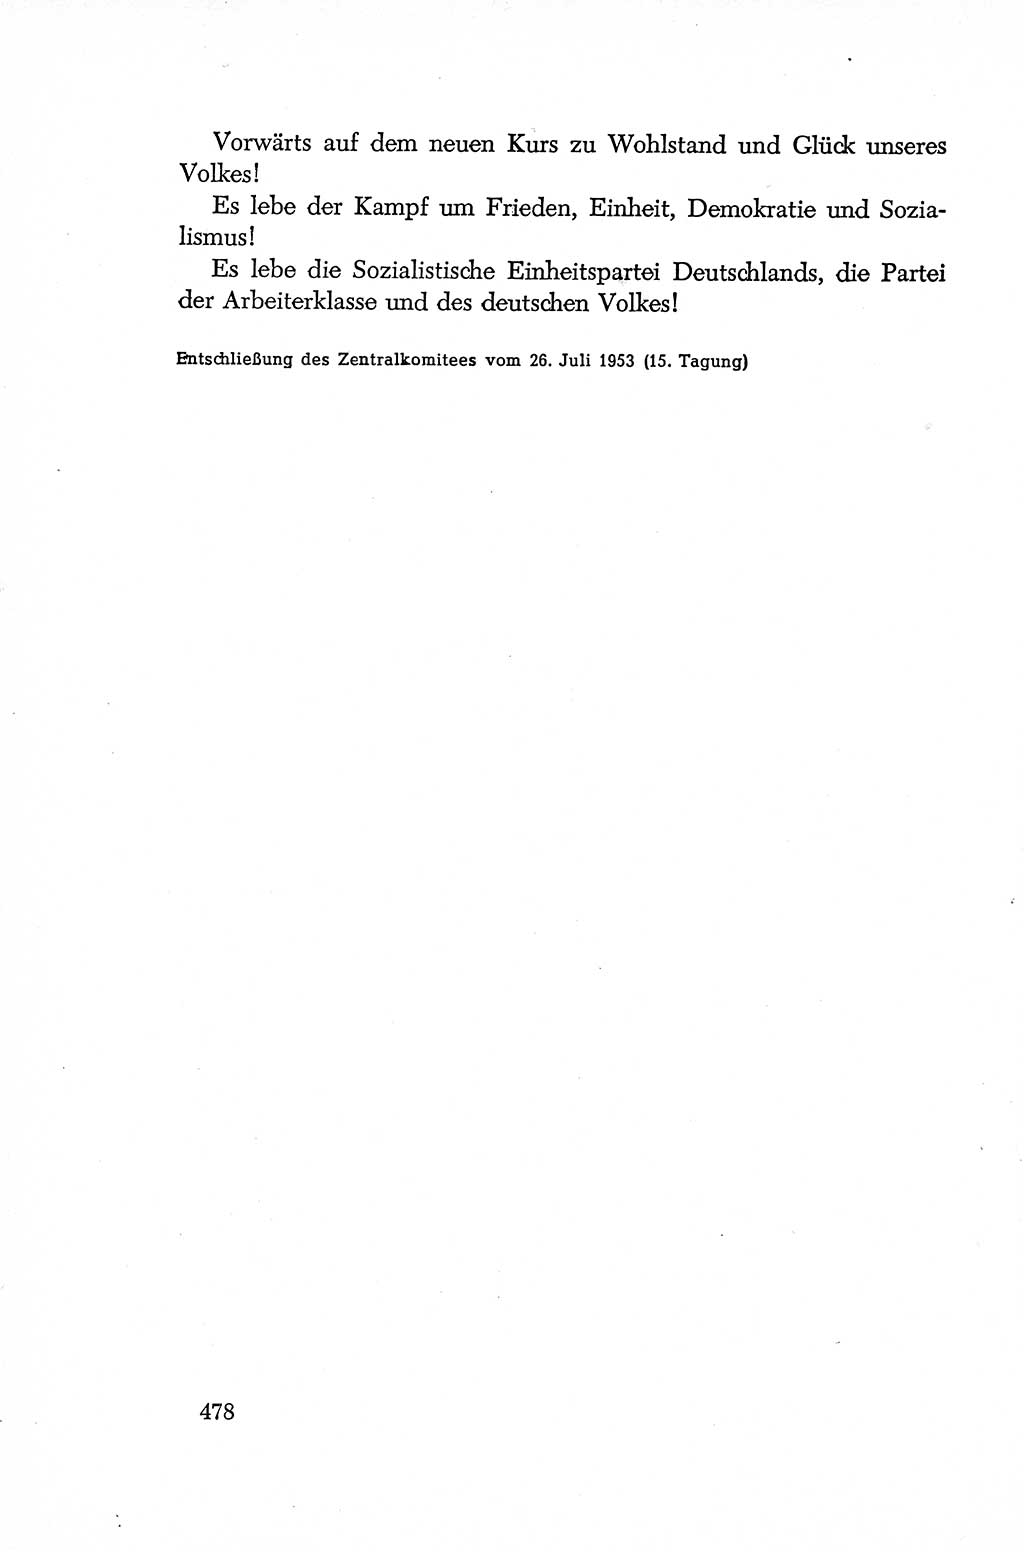 Dokumente der Sozialistischen Einheitspartei Deutschlands (SED) [Deutsche Demokratische Republik (DDR)] 1952-1953, Seite 478 (Dok. SED DDR 1952-1953, S. 478)